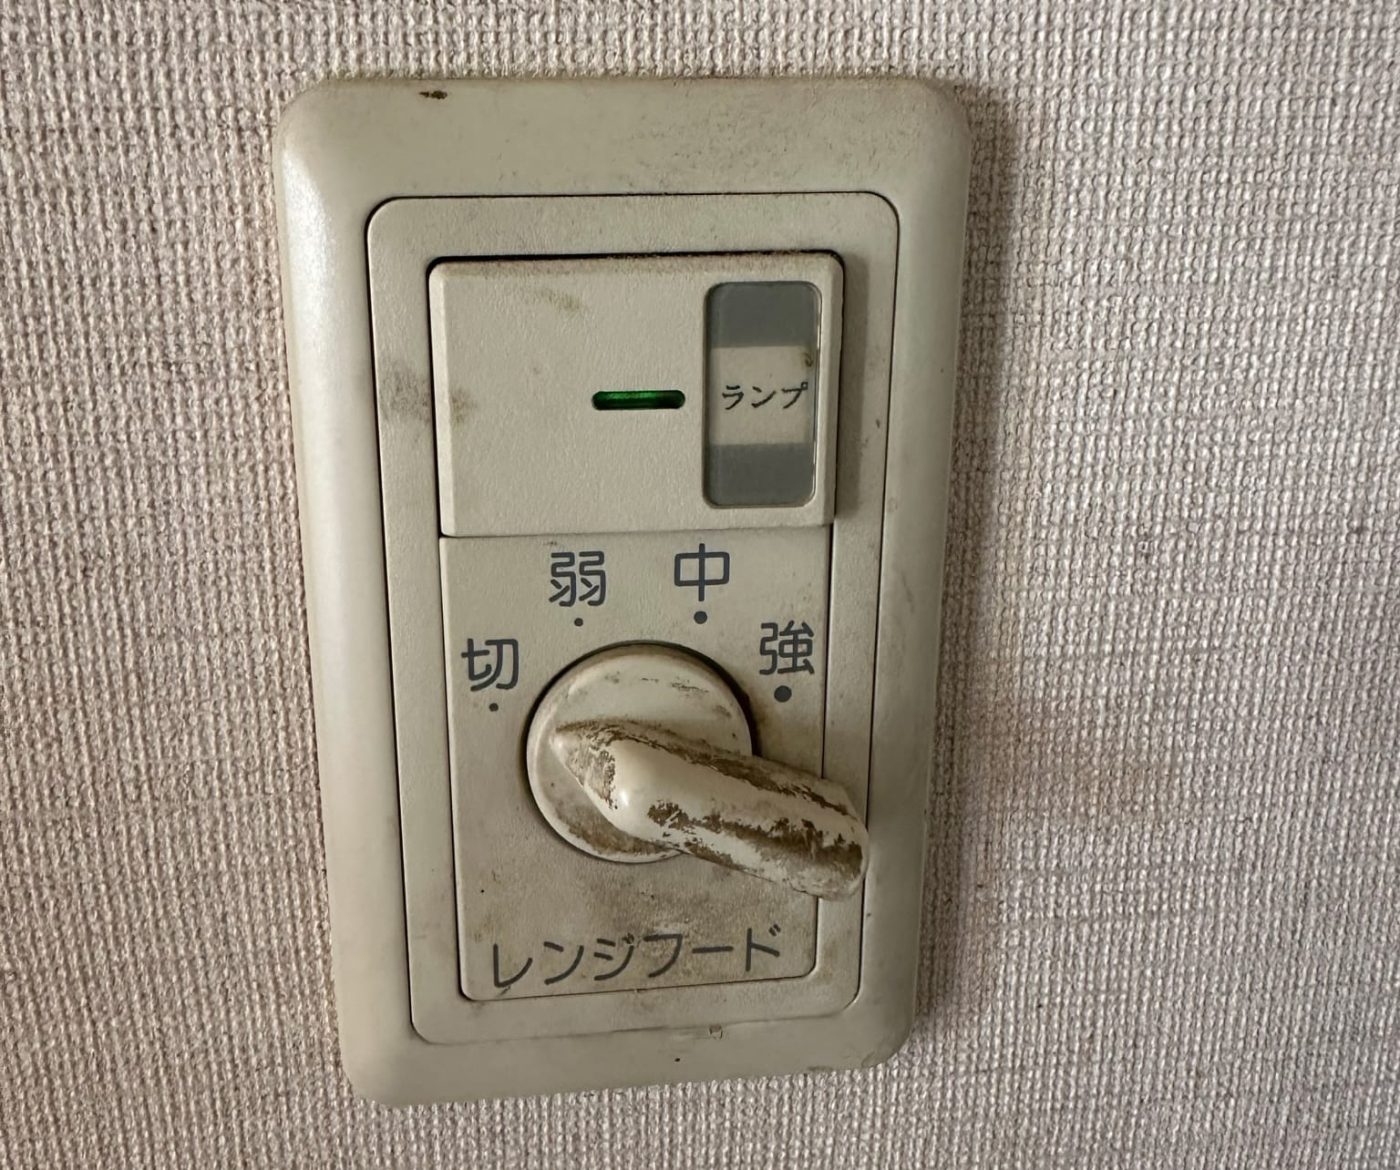 壁付けのレンジフードのスイッチ。今でも、浴室の換気扇だけはこういうスイッチで操作しますね。